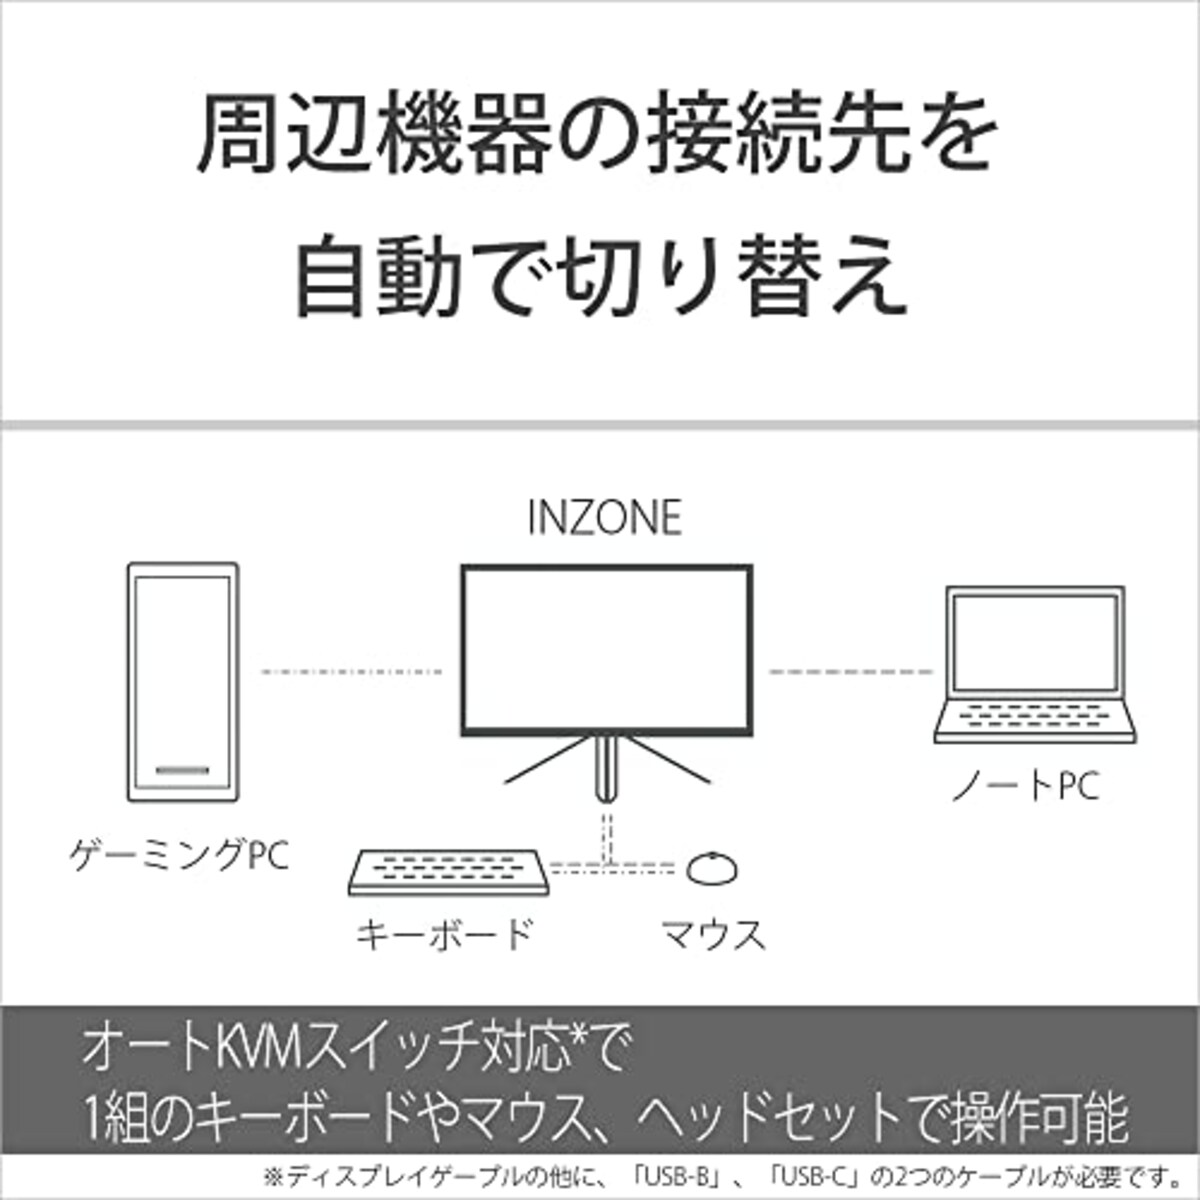  ソニー ゲーミングモニター INZONE M3 SDM-F27M30:2K 27インチ/リフレッシュレート240Hz/応答速度1ms GTG対応/チラつきやカクツキを軽減/sRGBカバー率99%/最大輝度400nit/PlayStation(R)5との連携/EVO Japan 2023公式競技ギア画像15 